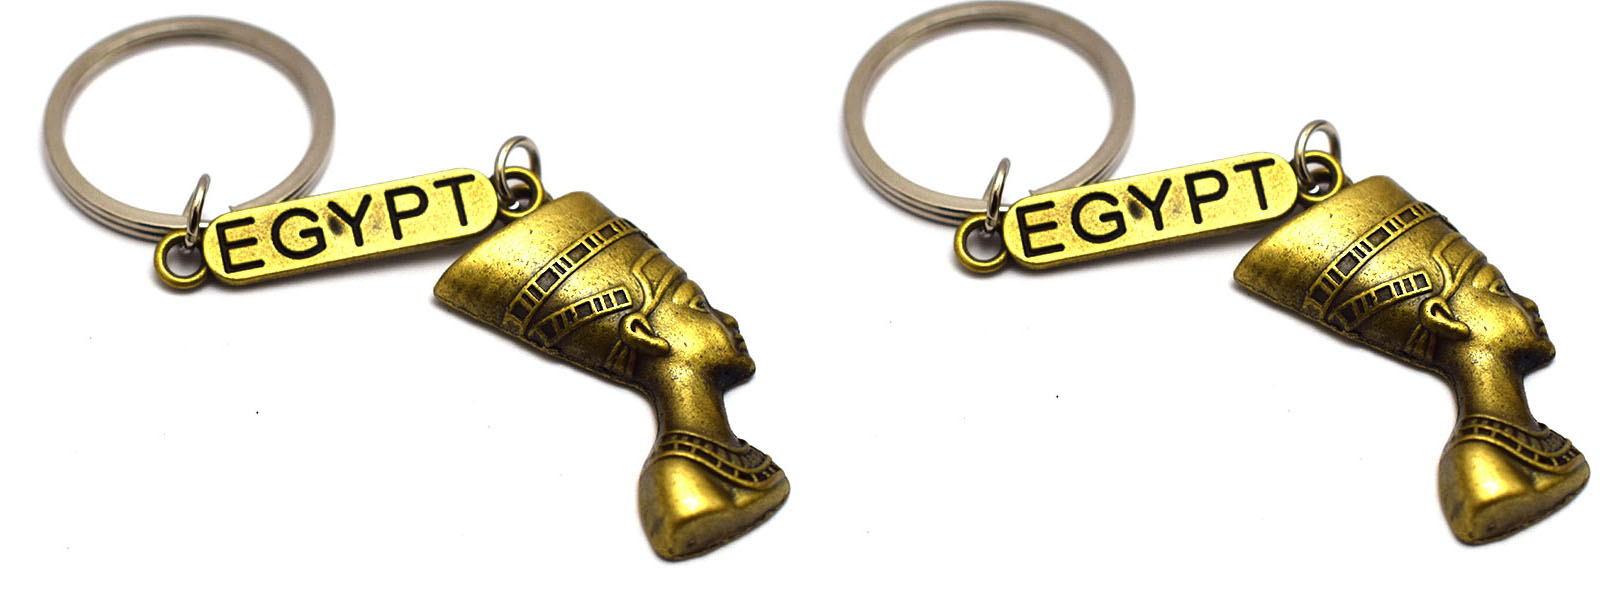 2 قطعة ميدالية مفاتيح الملكة المصرية الفرعونية نفرتيتي هدايا تذكارية مصرية - هدية مستوحاة من مصر (أصفر محروق)